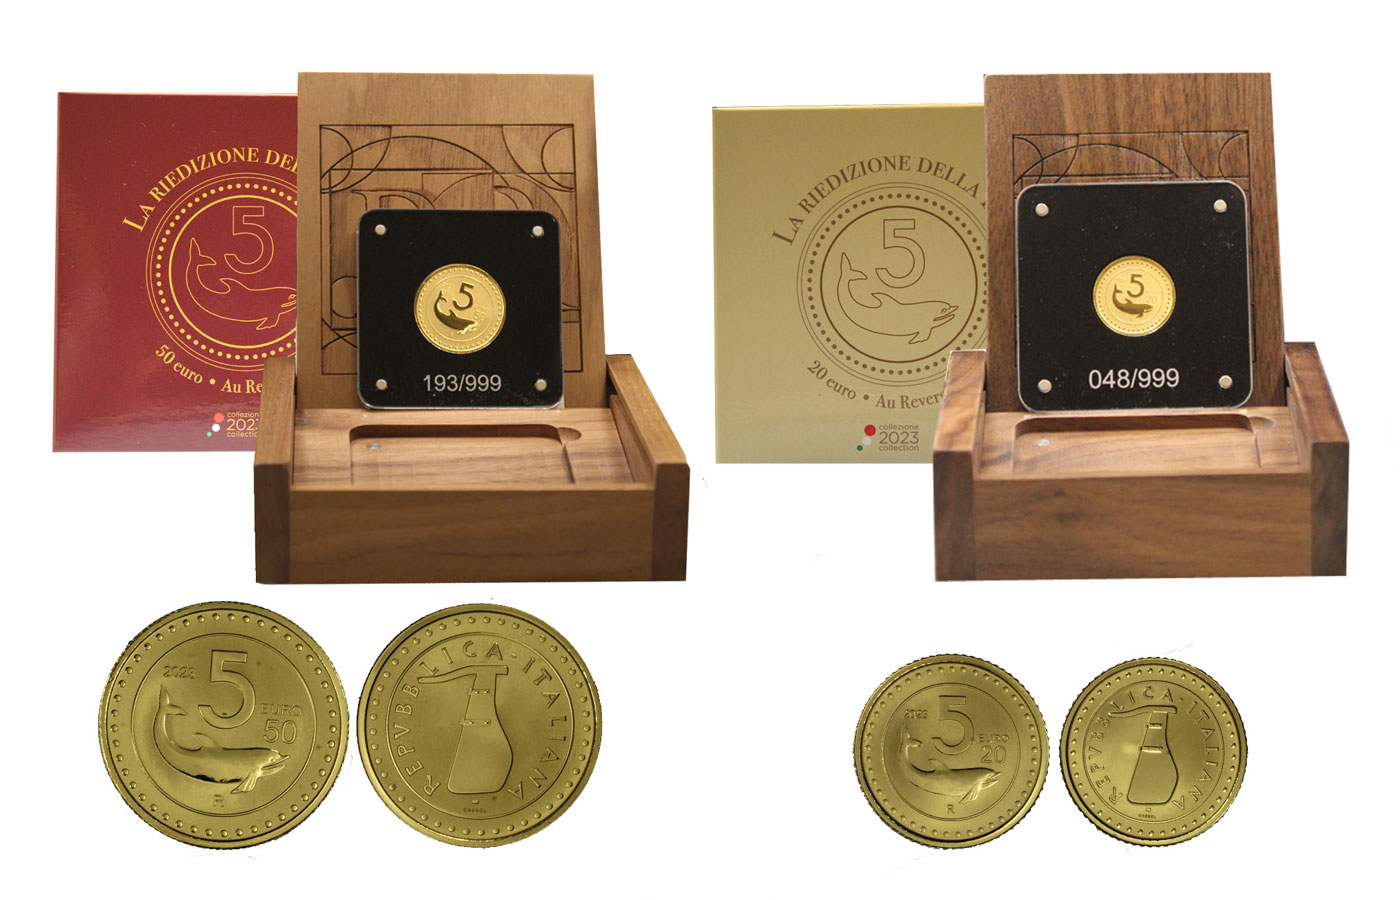 "Riedizione della Lira:  5 lire" - 20 euro gr. 7,77 e 50 euro gr. 15,52 in oro 999/ - Tiratura 999 pezzi